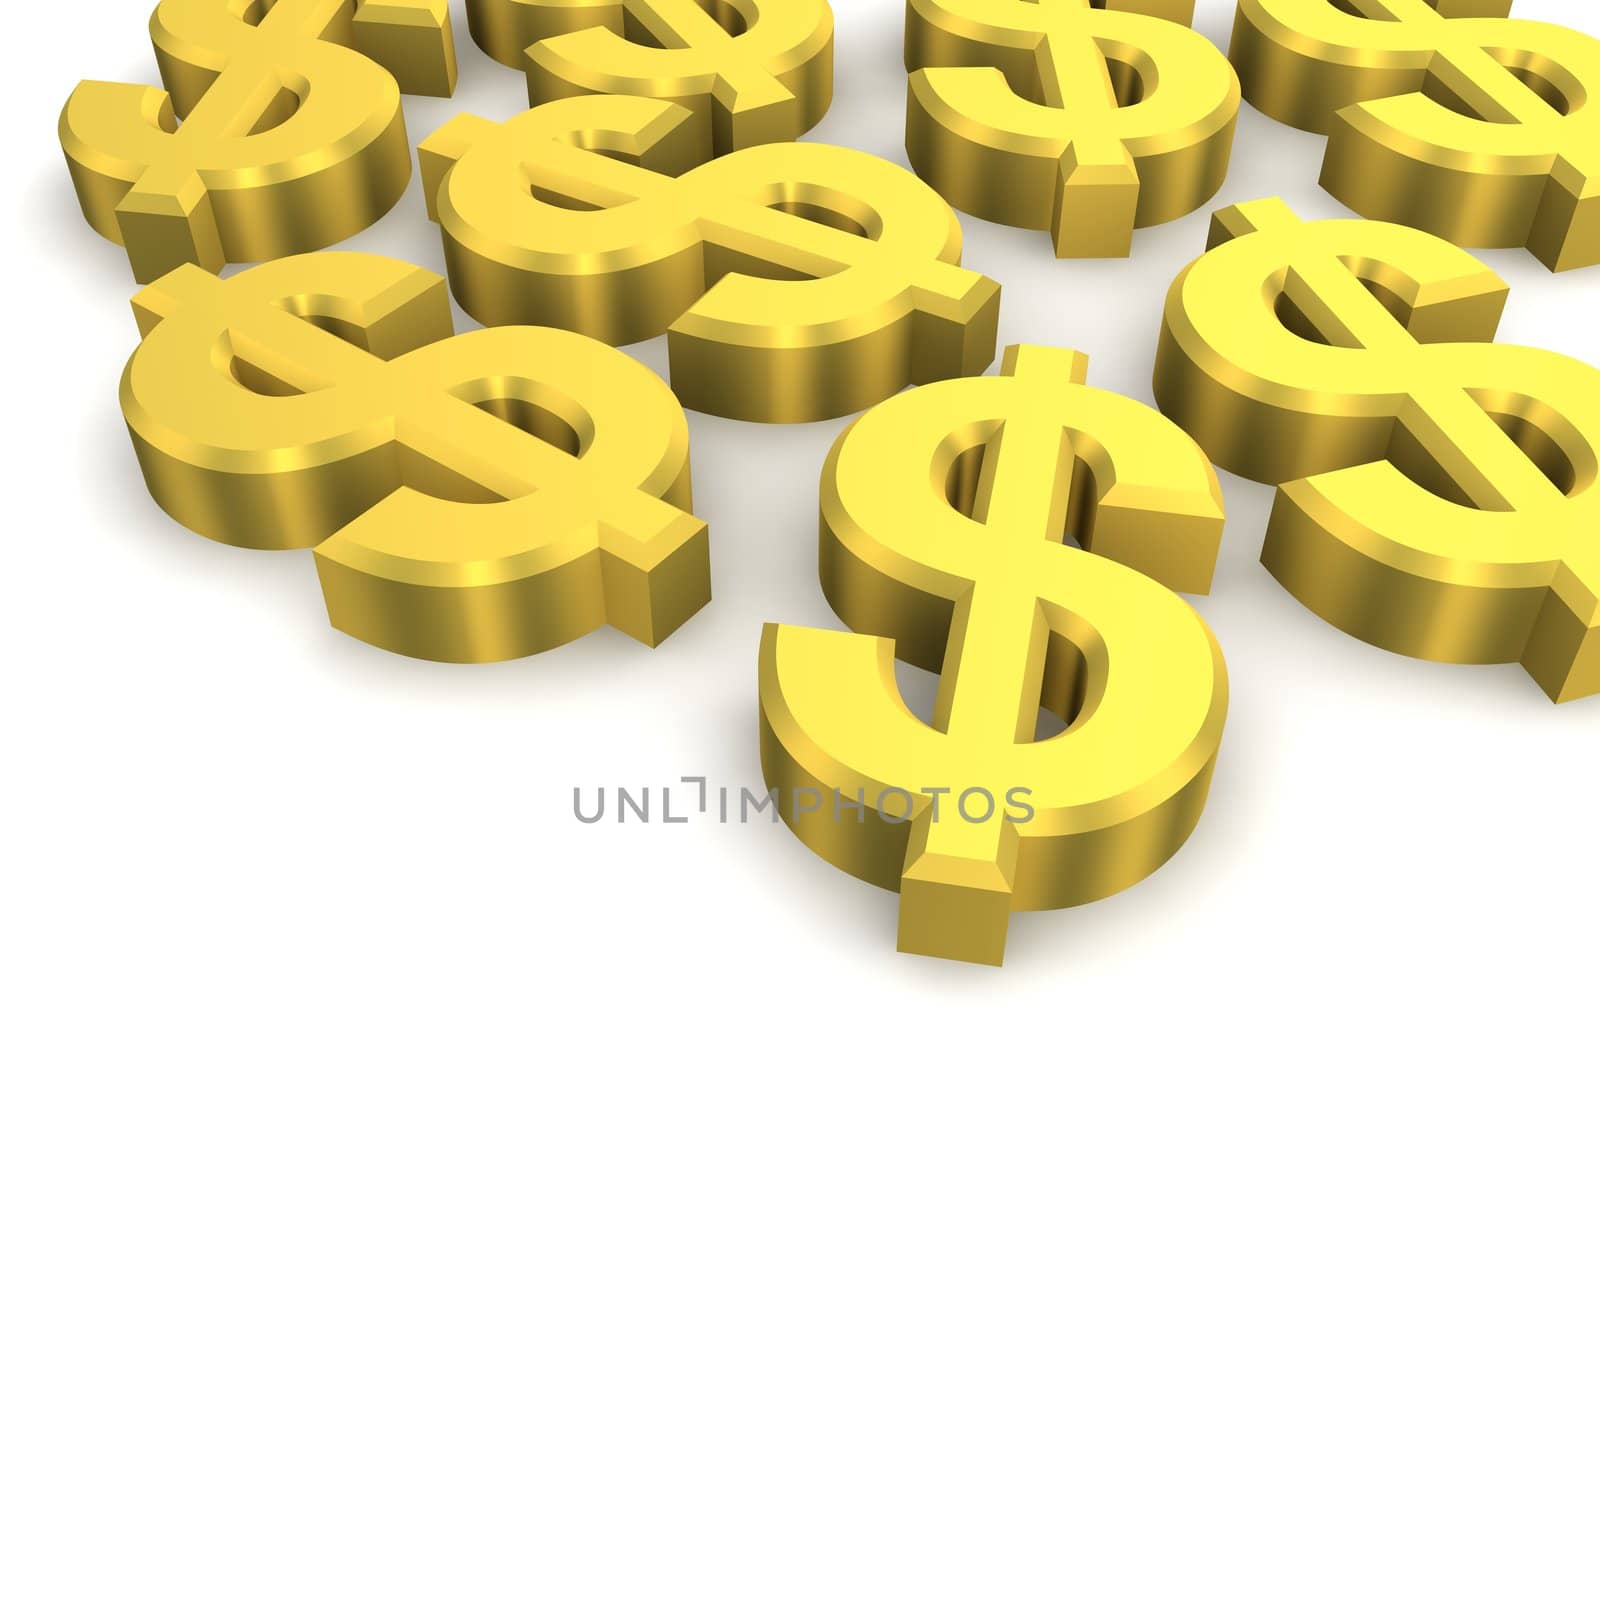 Golden dollar currency symbols. 3d rendered image